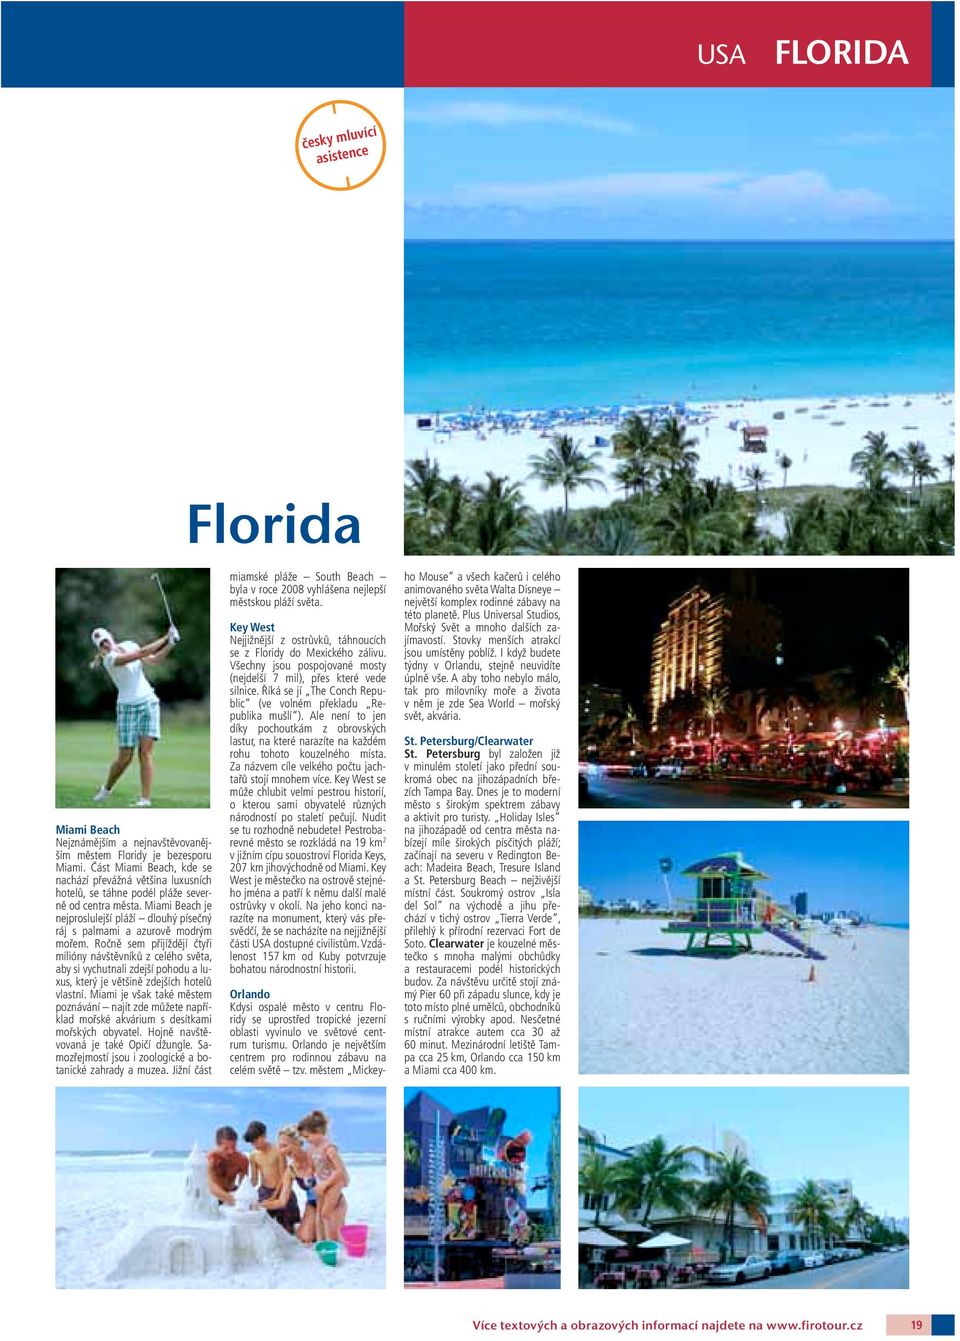 Miami Beach je nejproslulejší pláží dlouhý písečný ráj s palmami a azurově modrým mořem.